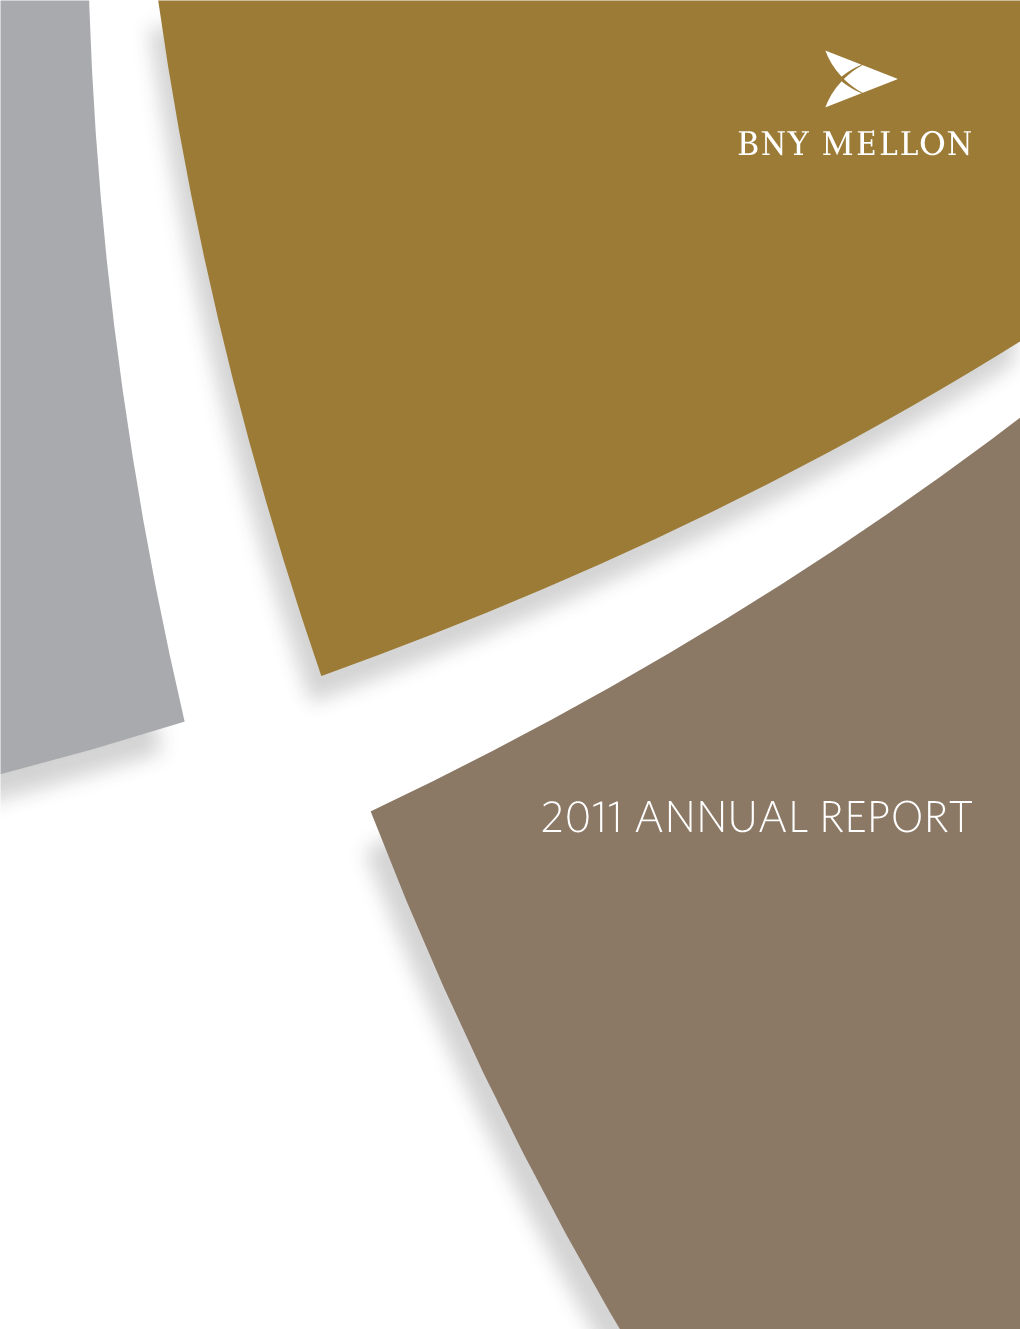 BNY Mellon Financial Reports 2011